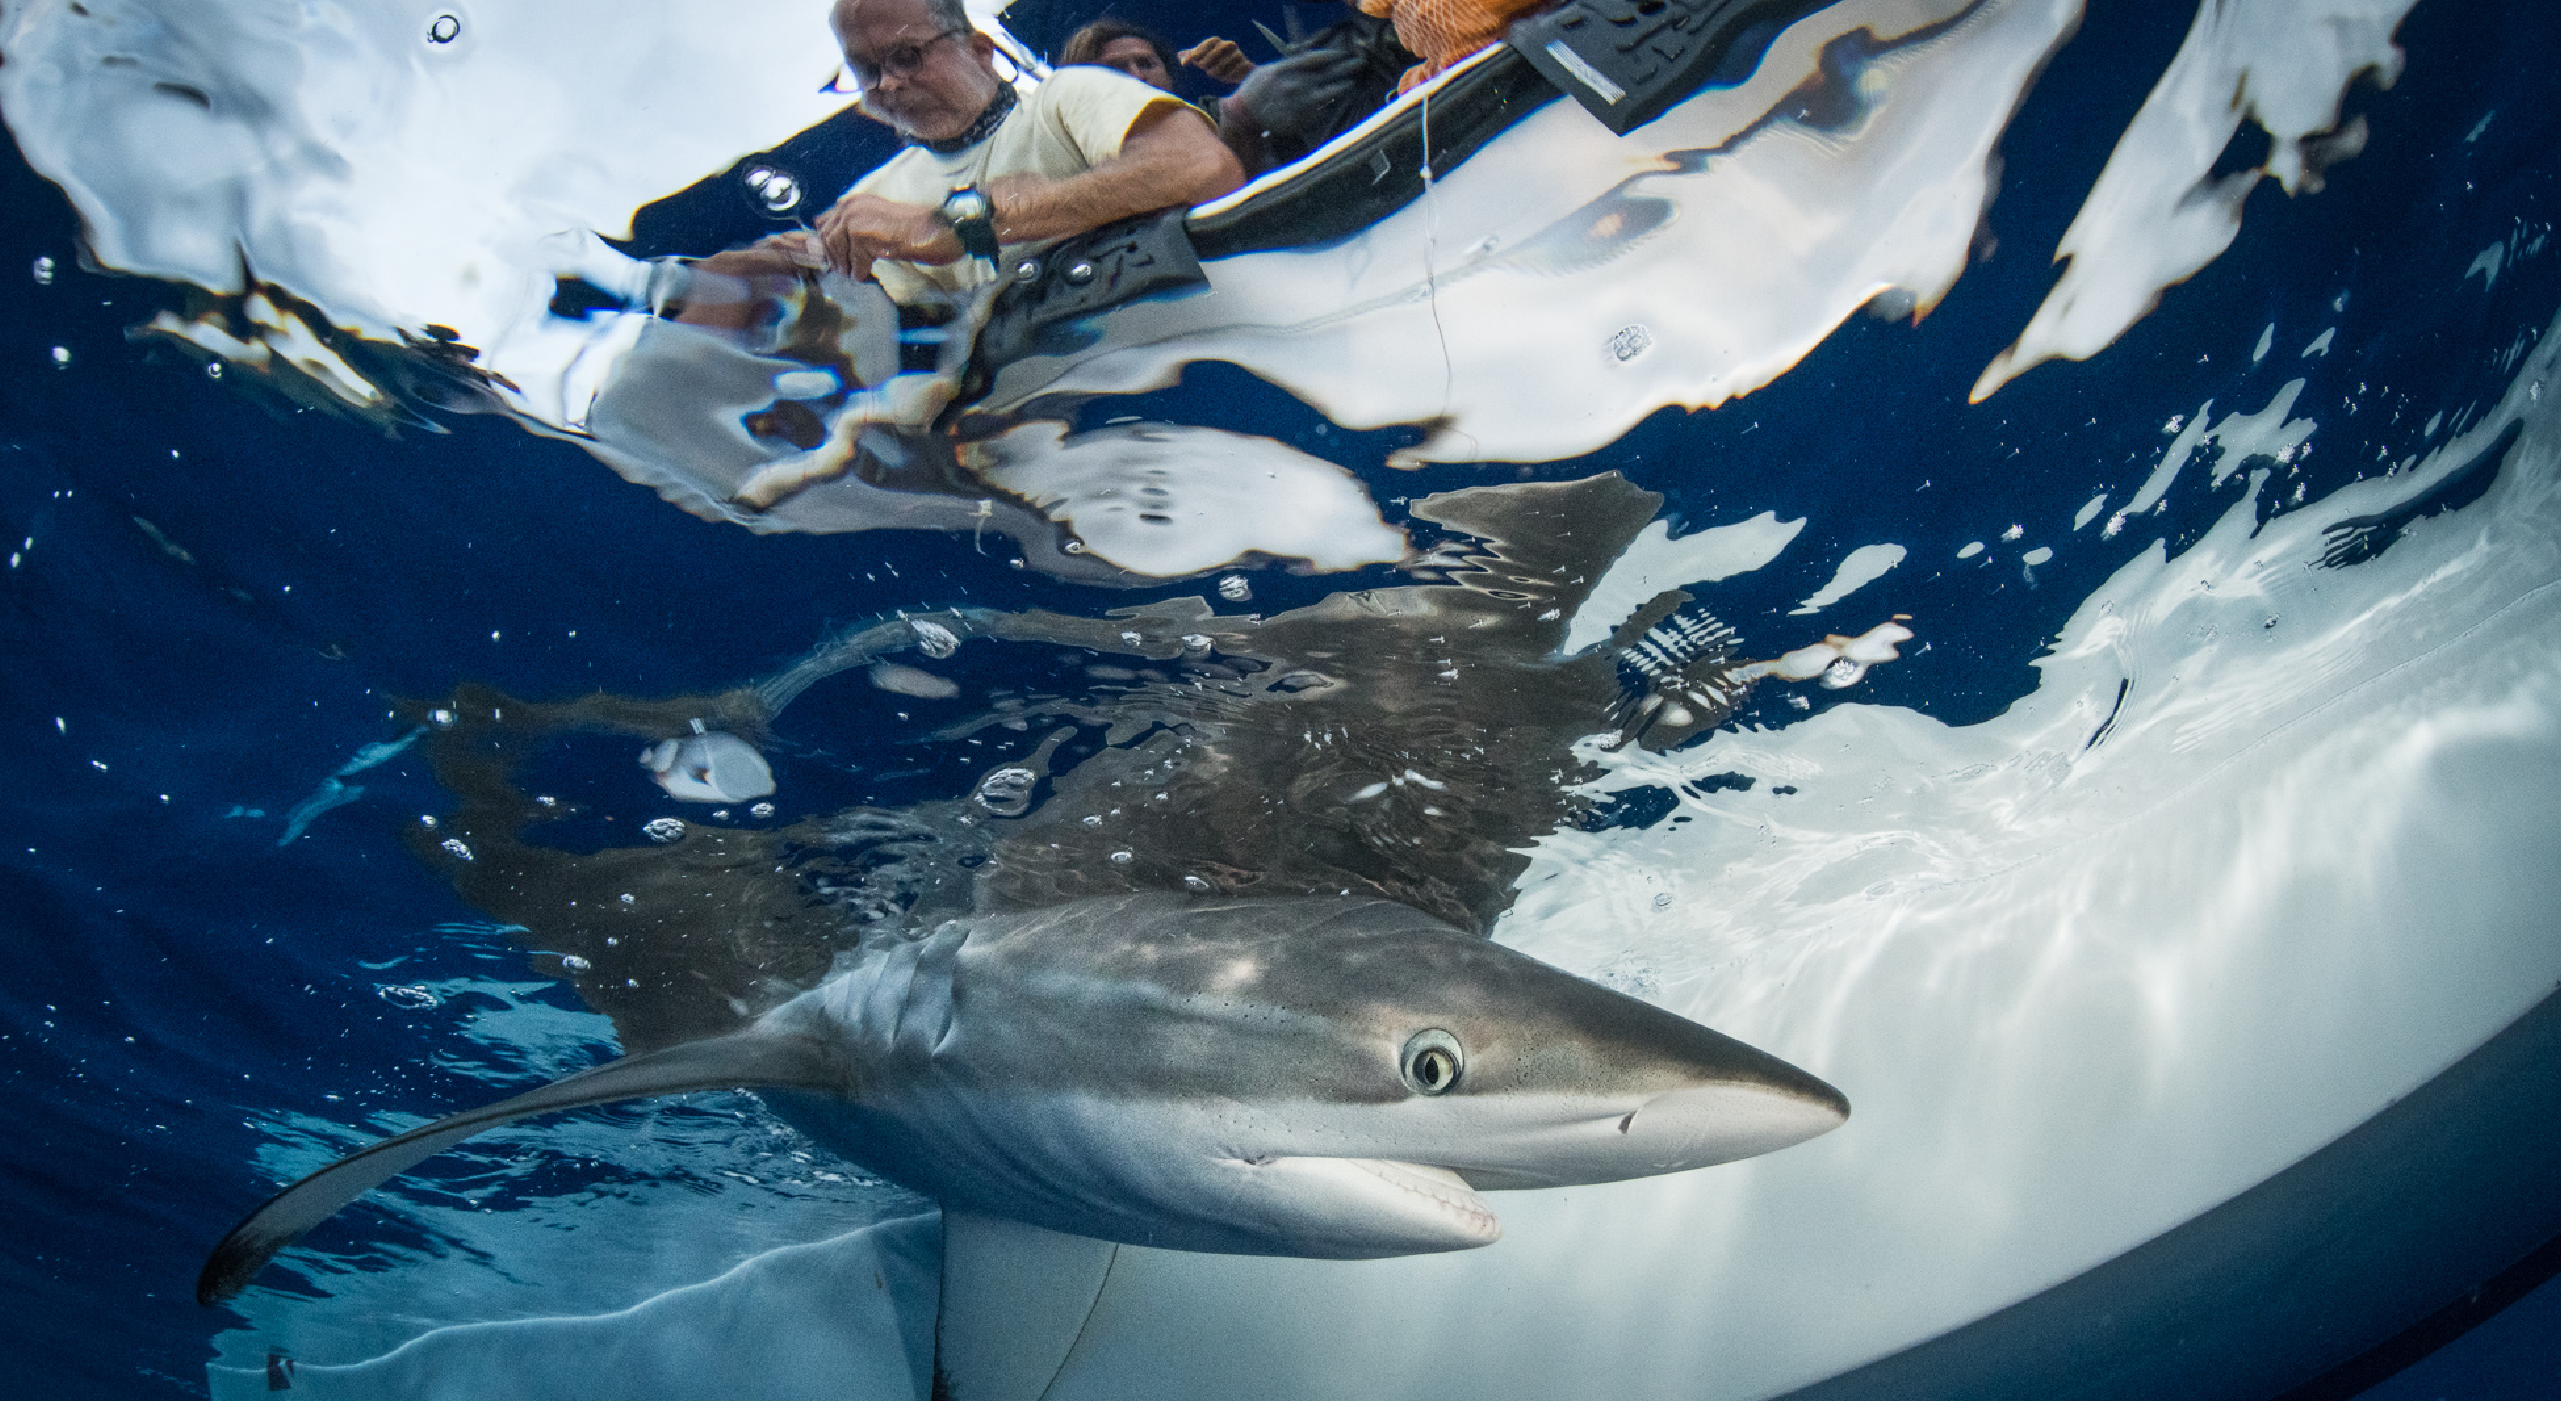 Shark tagging 360°